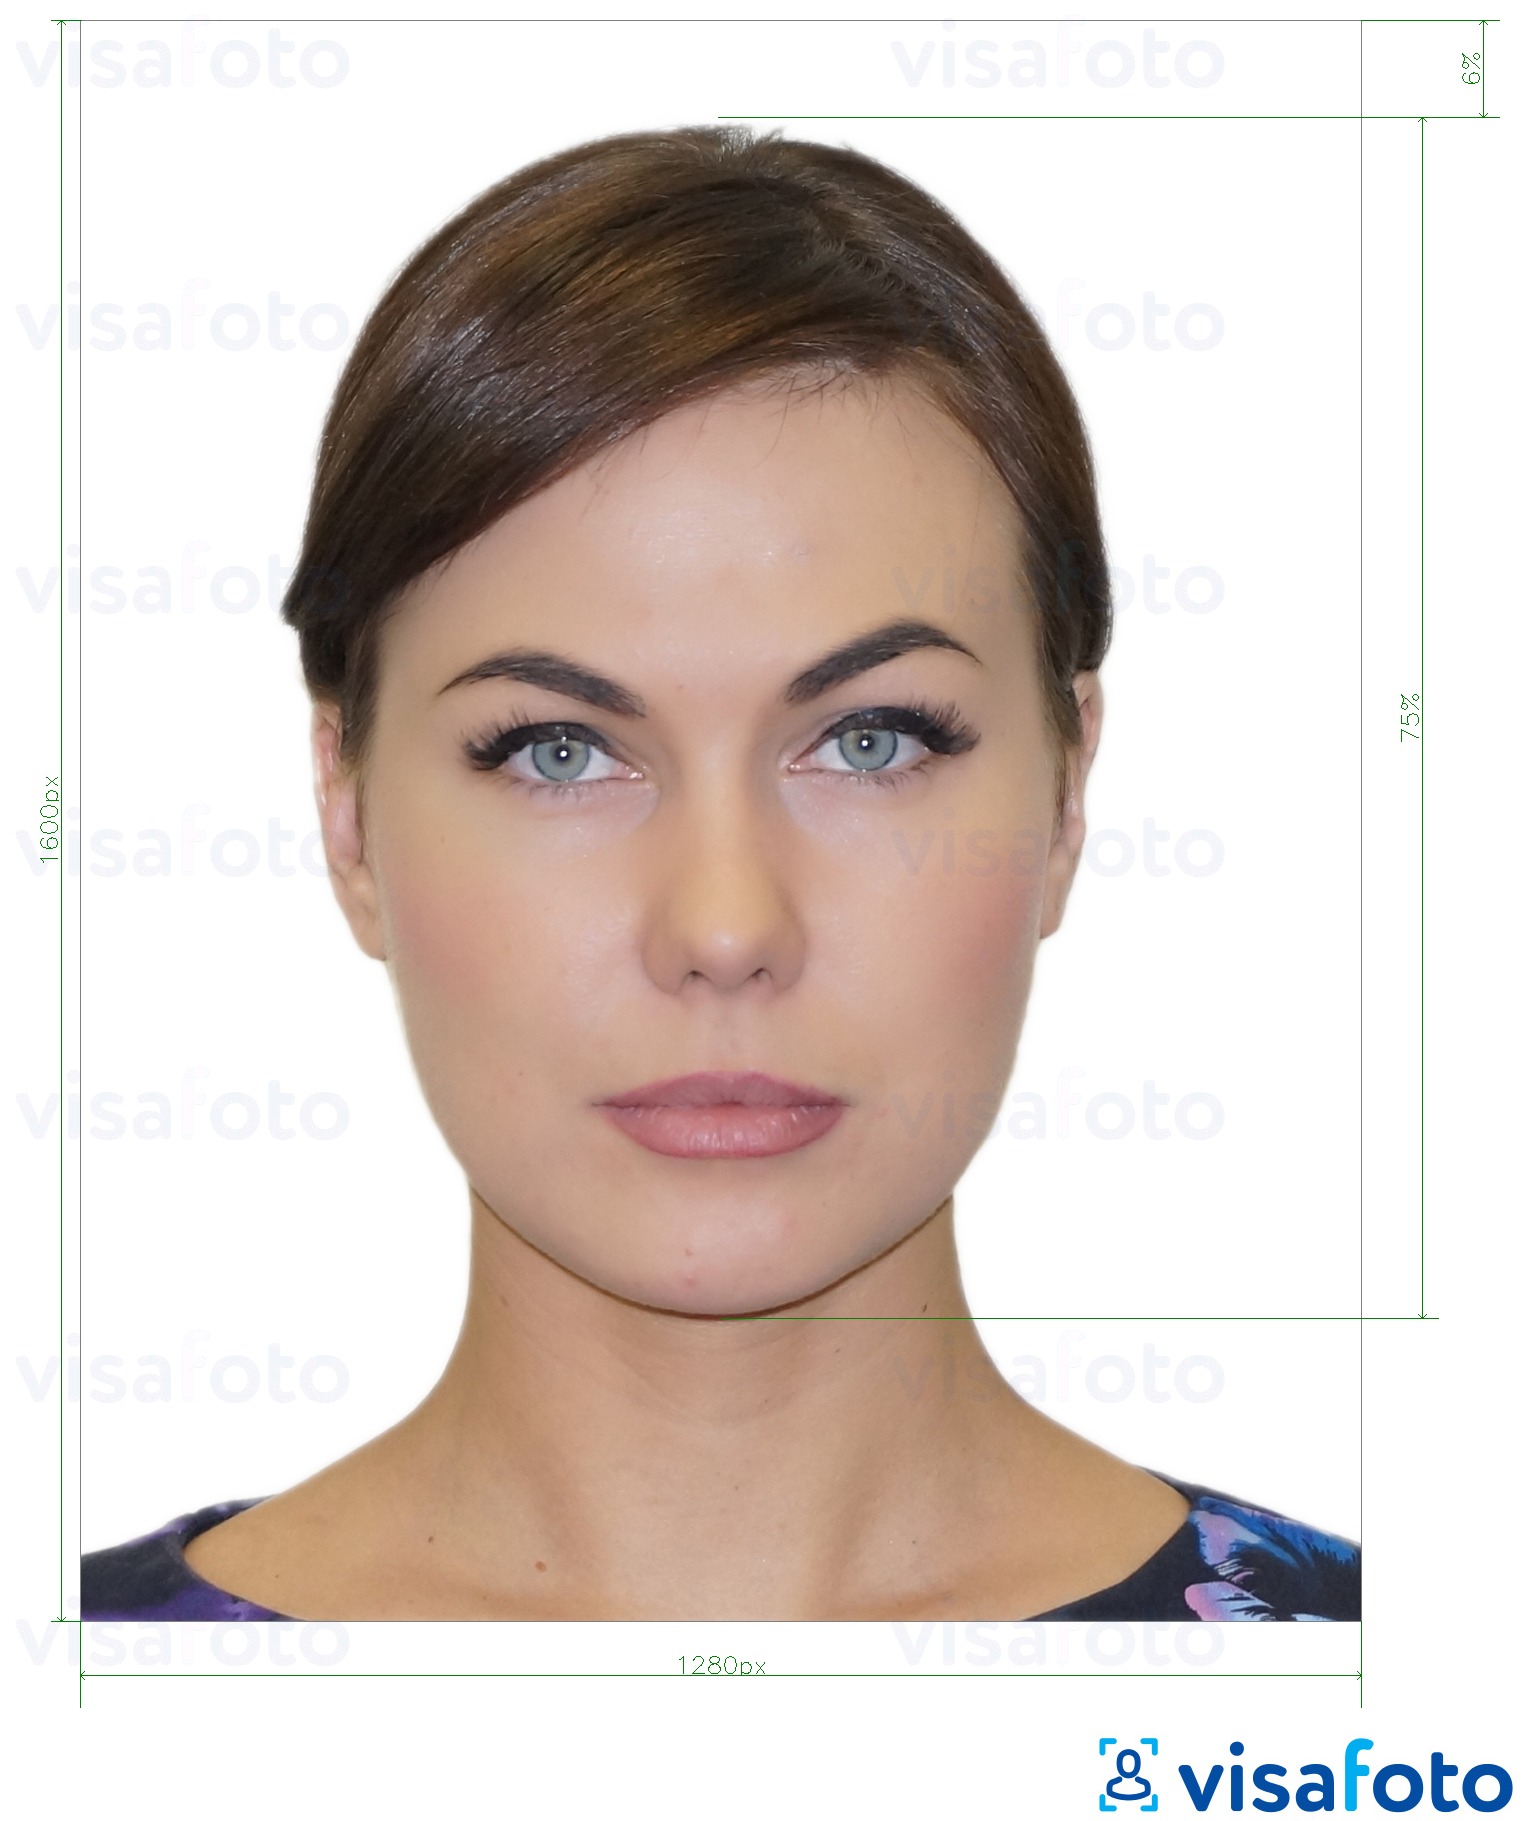 Esempio di foto per Patente di guida greca 1280x1600 pixel con specifiche delle dimensioni esatte